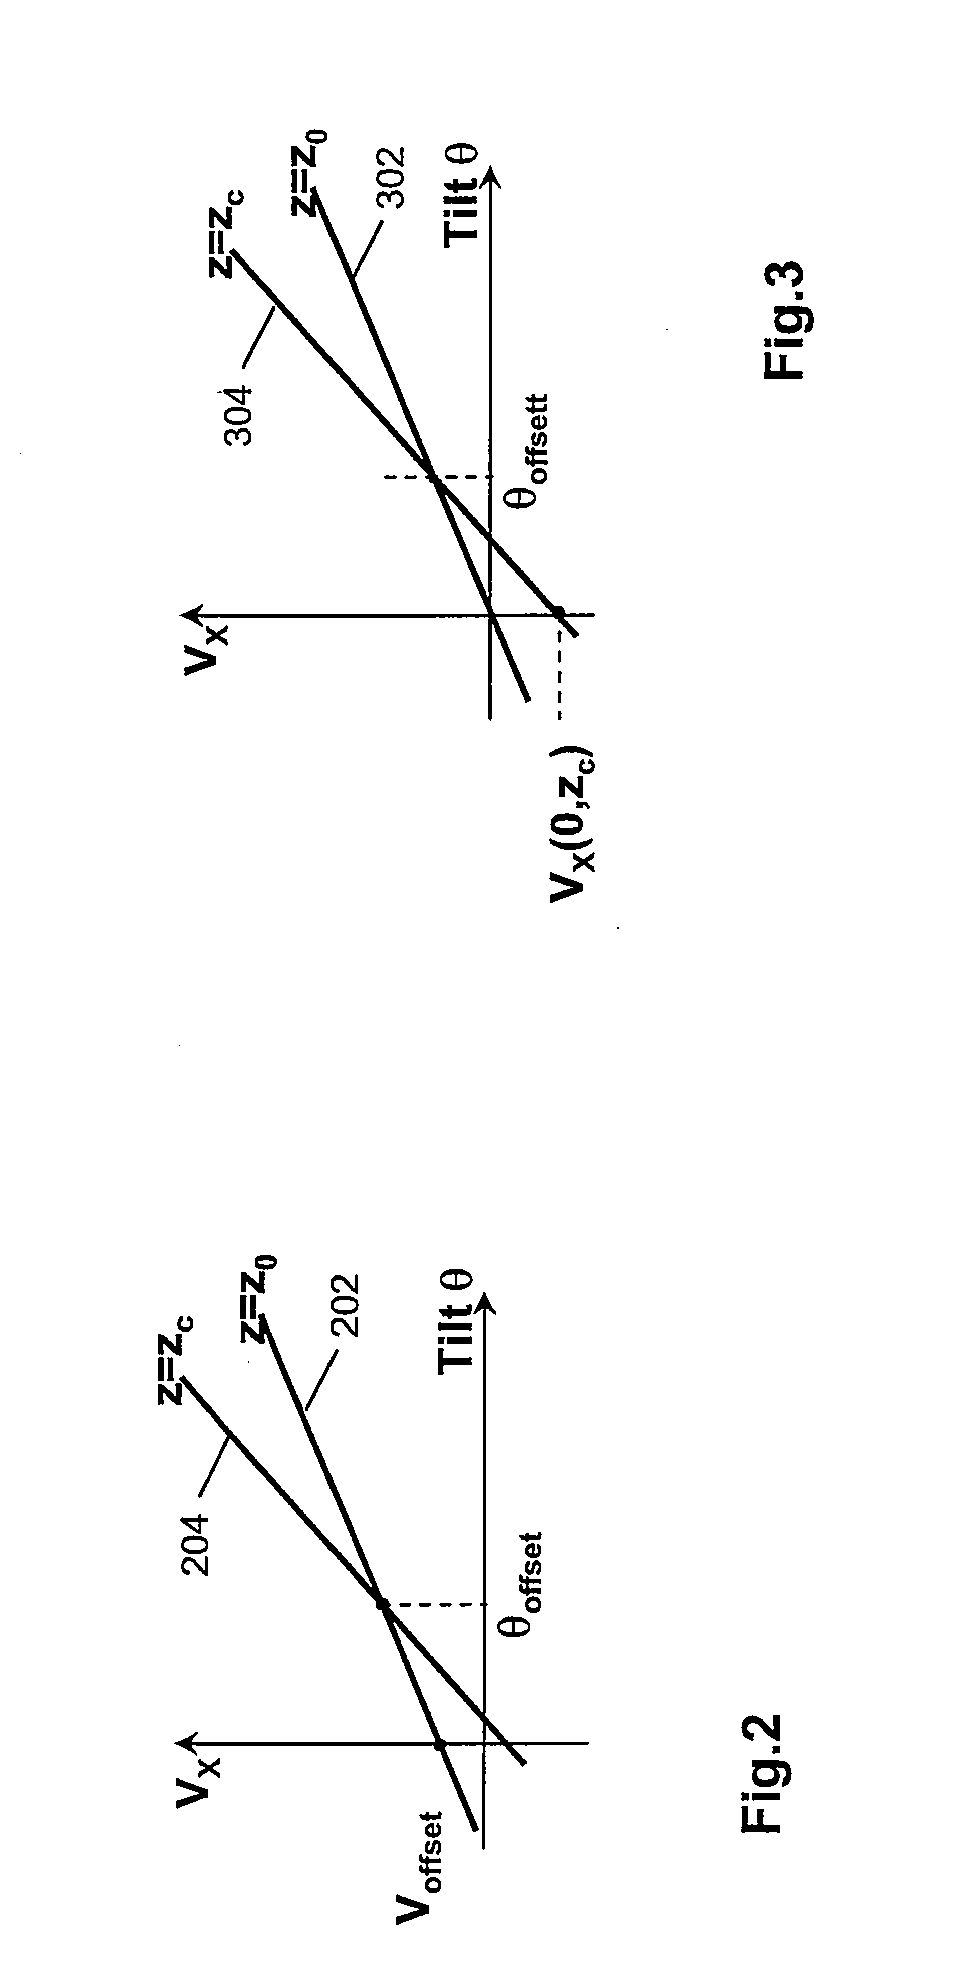 Calibration of an amr sensor